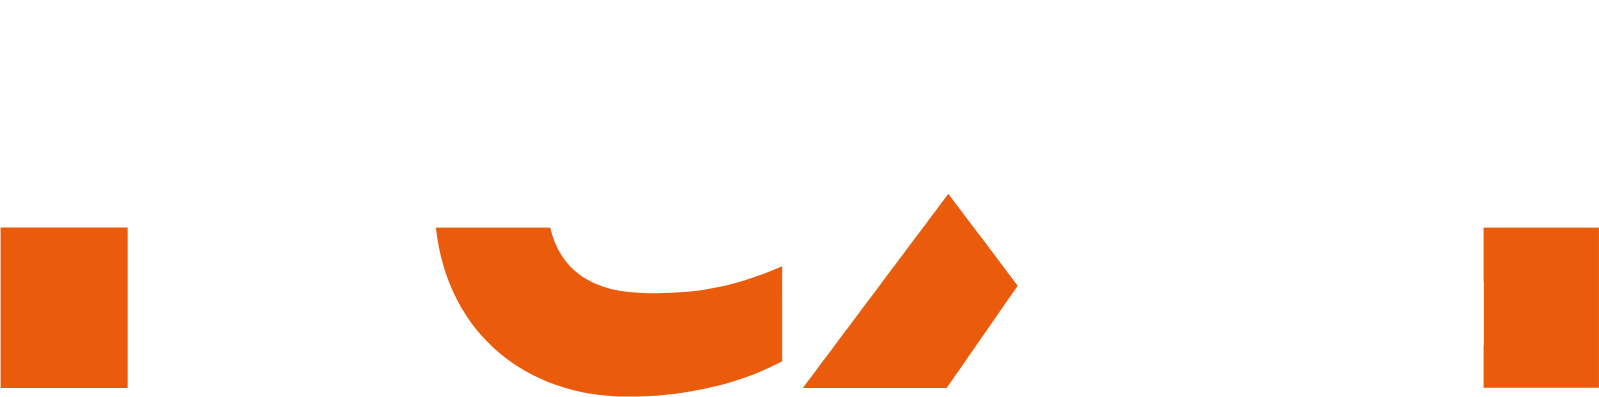 Nexa Resources Logo groß für dunkle Hintergründe (transparentes PNG)